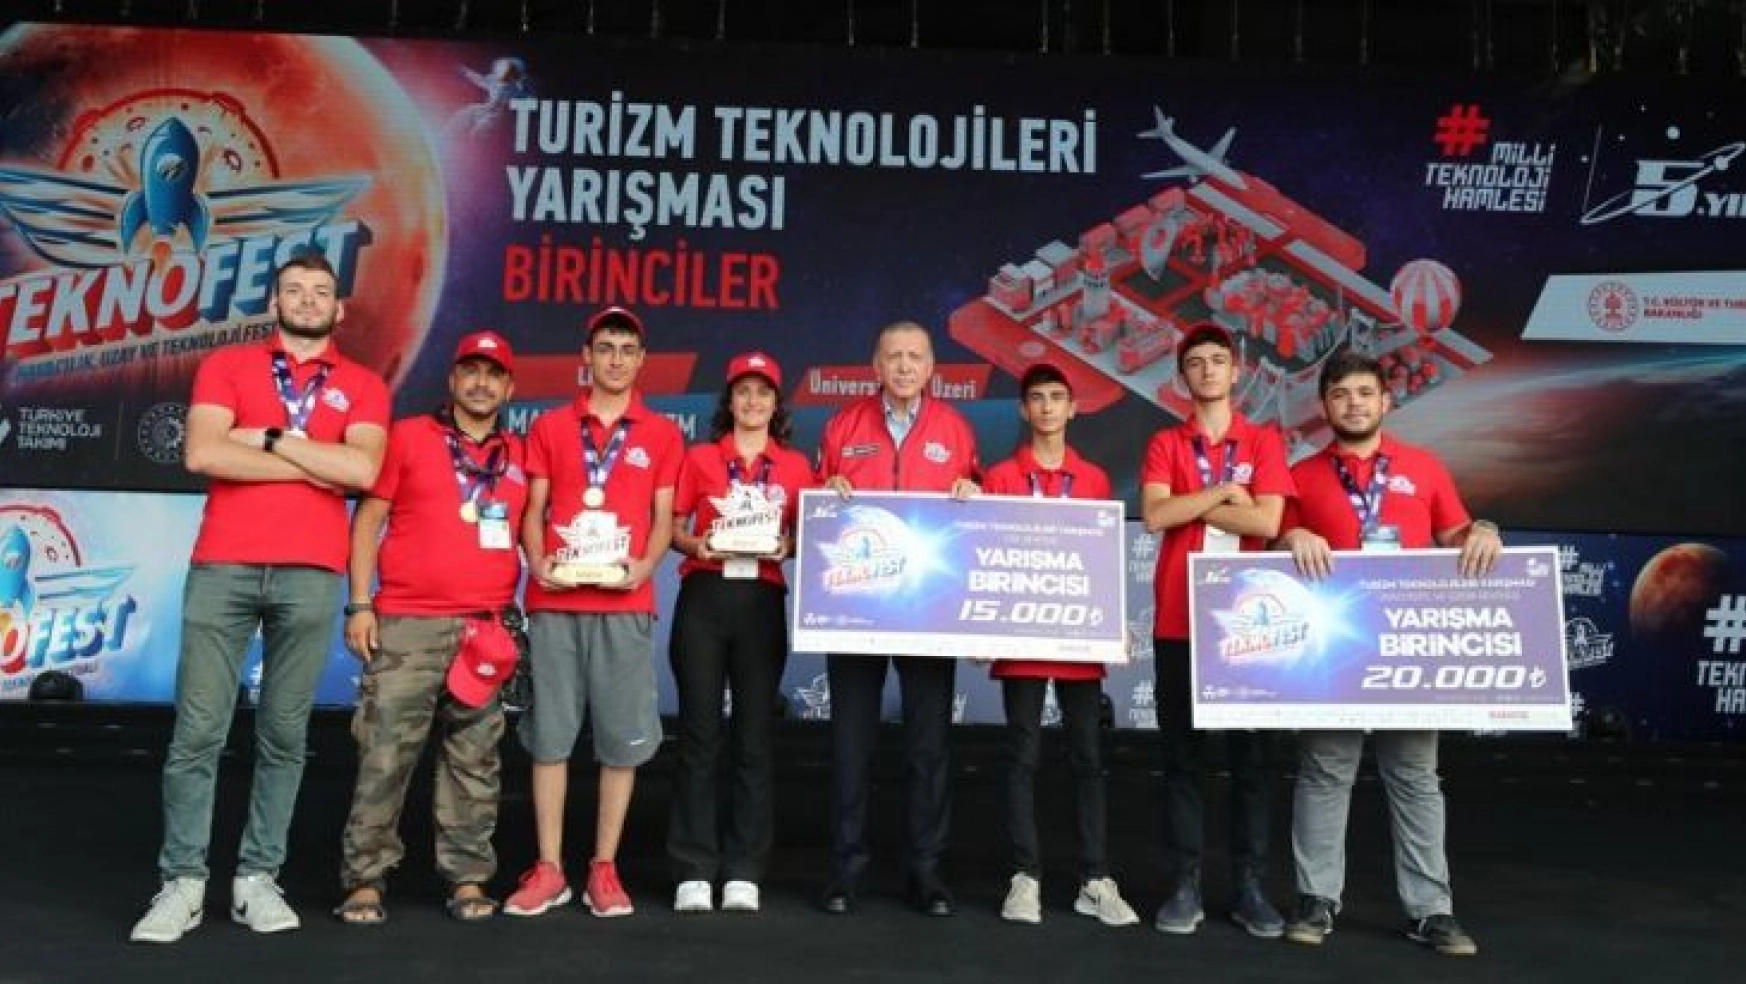 TEKNOFEST 'Turizm Teknolojileri' kategorisinde birincilik HKÜ'lü öğrencilerin